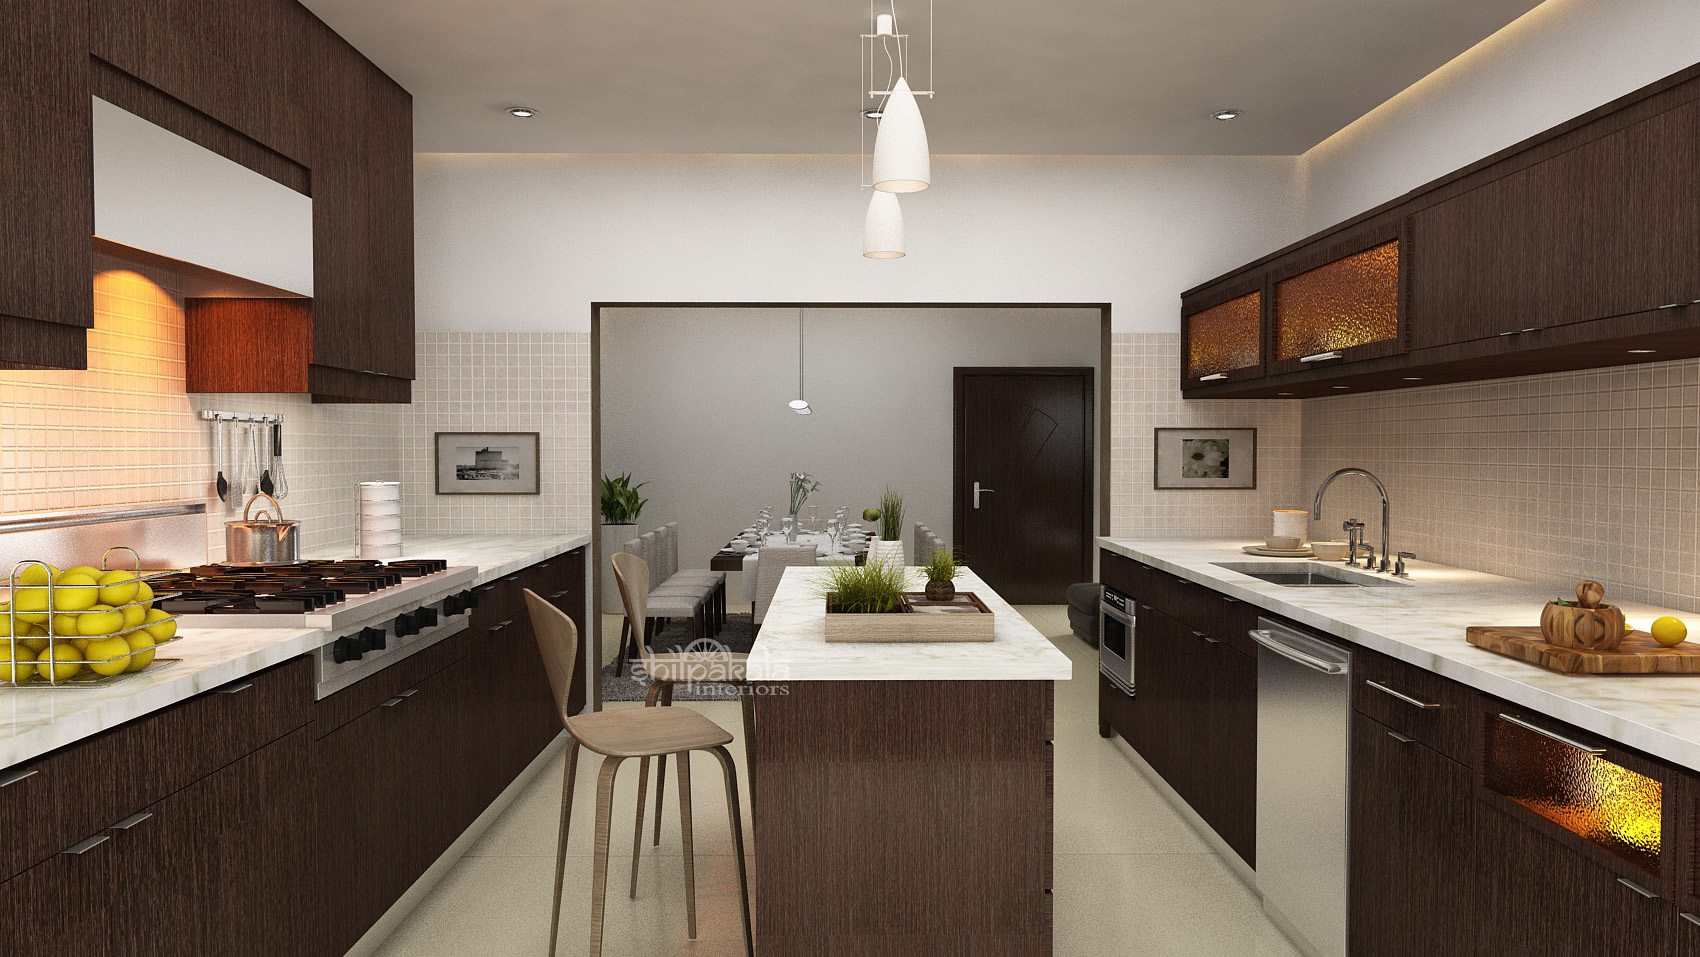 home kitchen interior design image